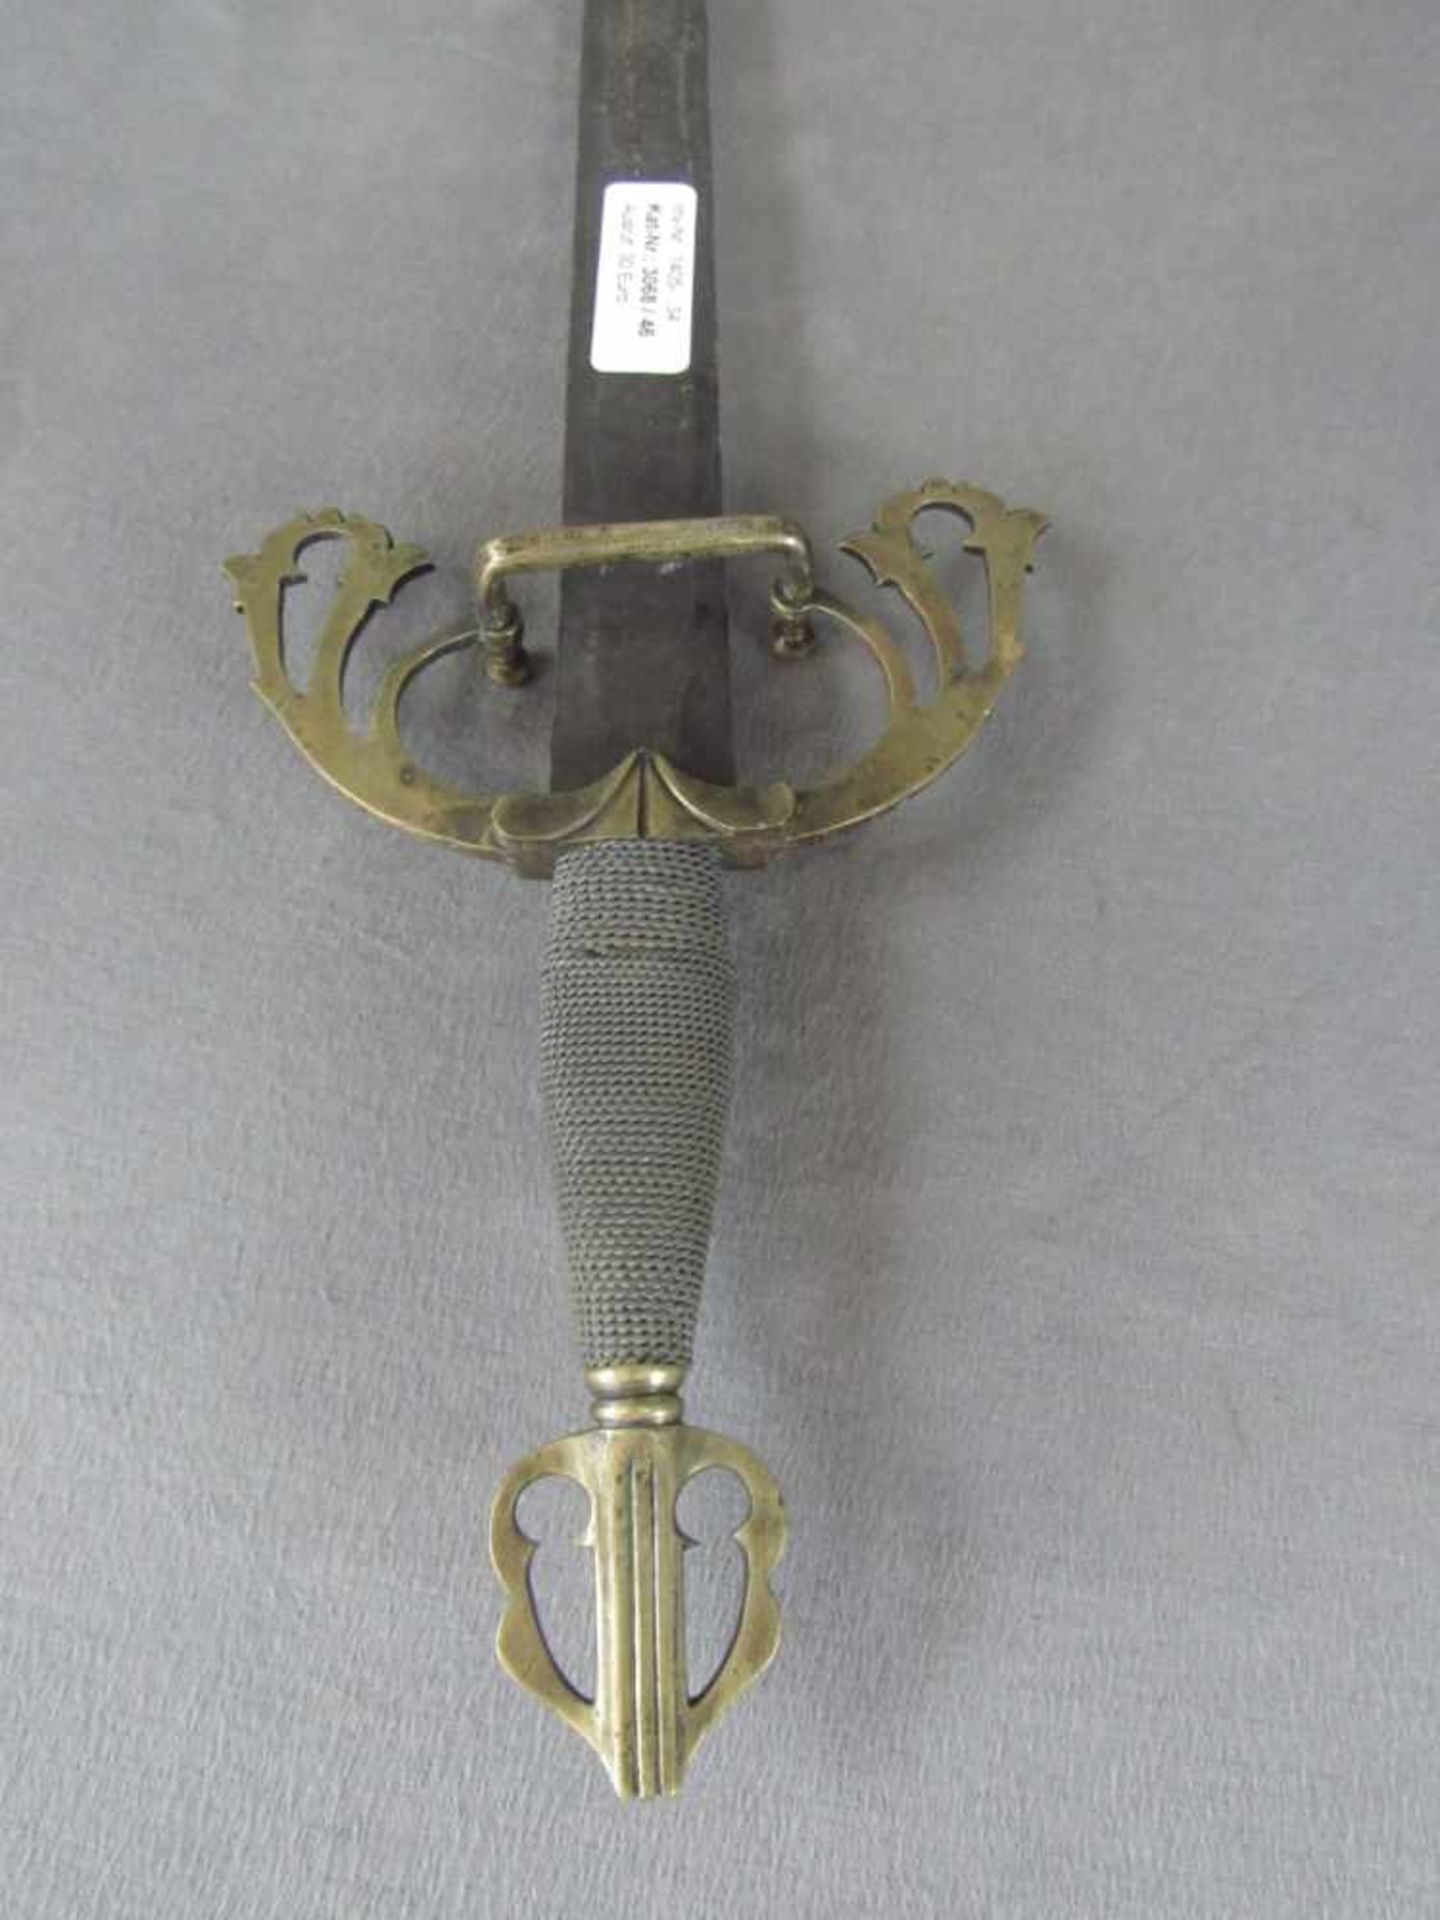 Asiatisches Schwert leicht rostnarbig 73cm lang - Bild 2 aus 5